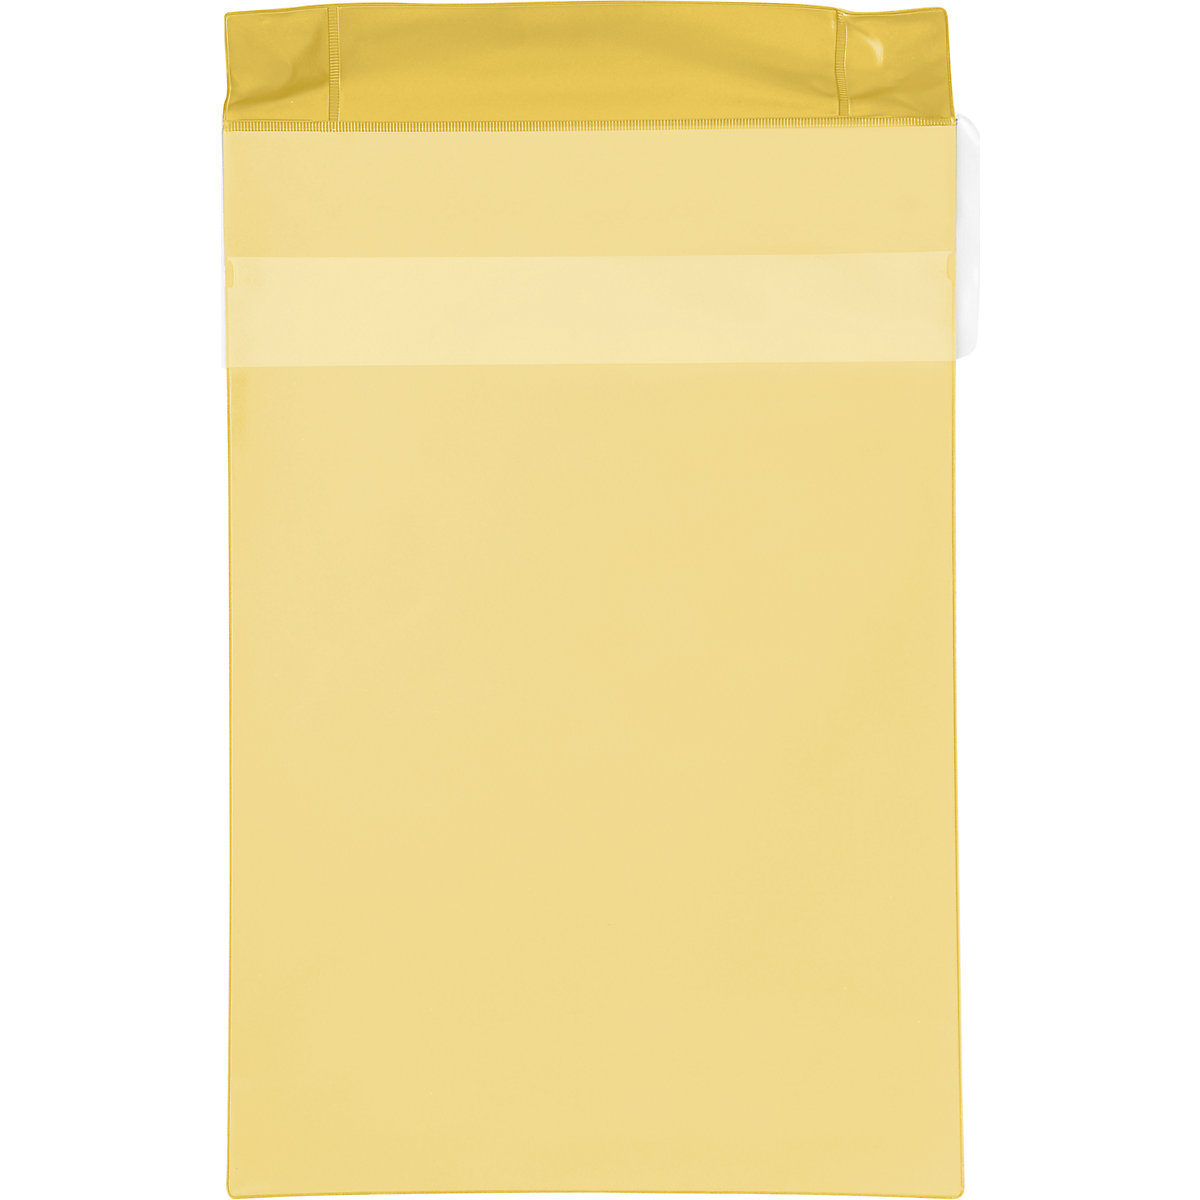 Pochettes magnétiques en néodyme, format vertical, avec rabat de protection contre la pluie, lot de 25, jaune, format A4, à partir de 2 lots